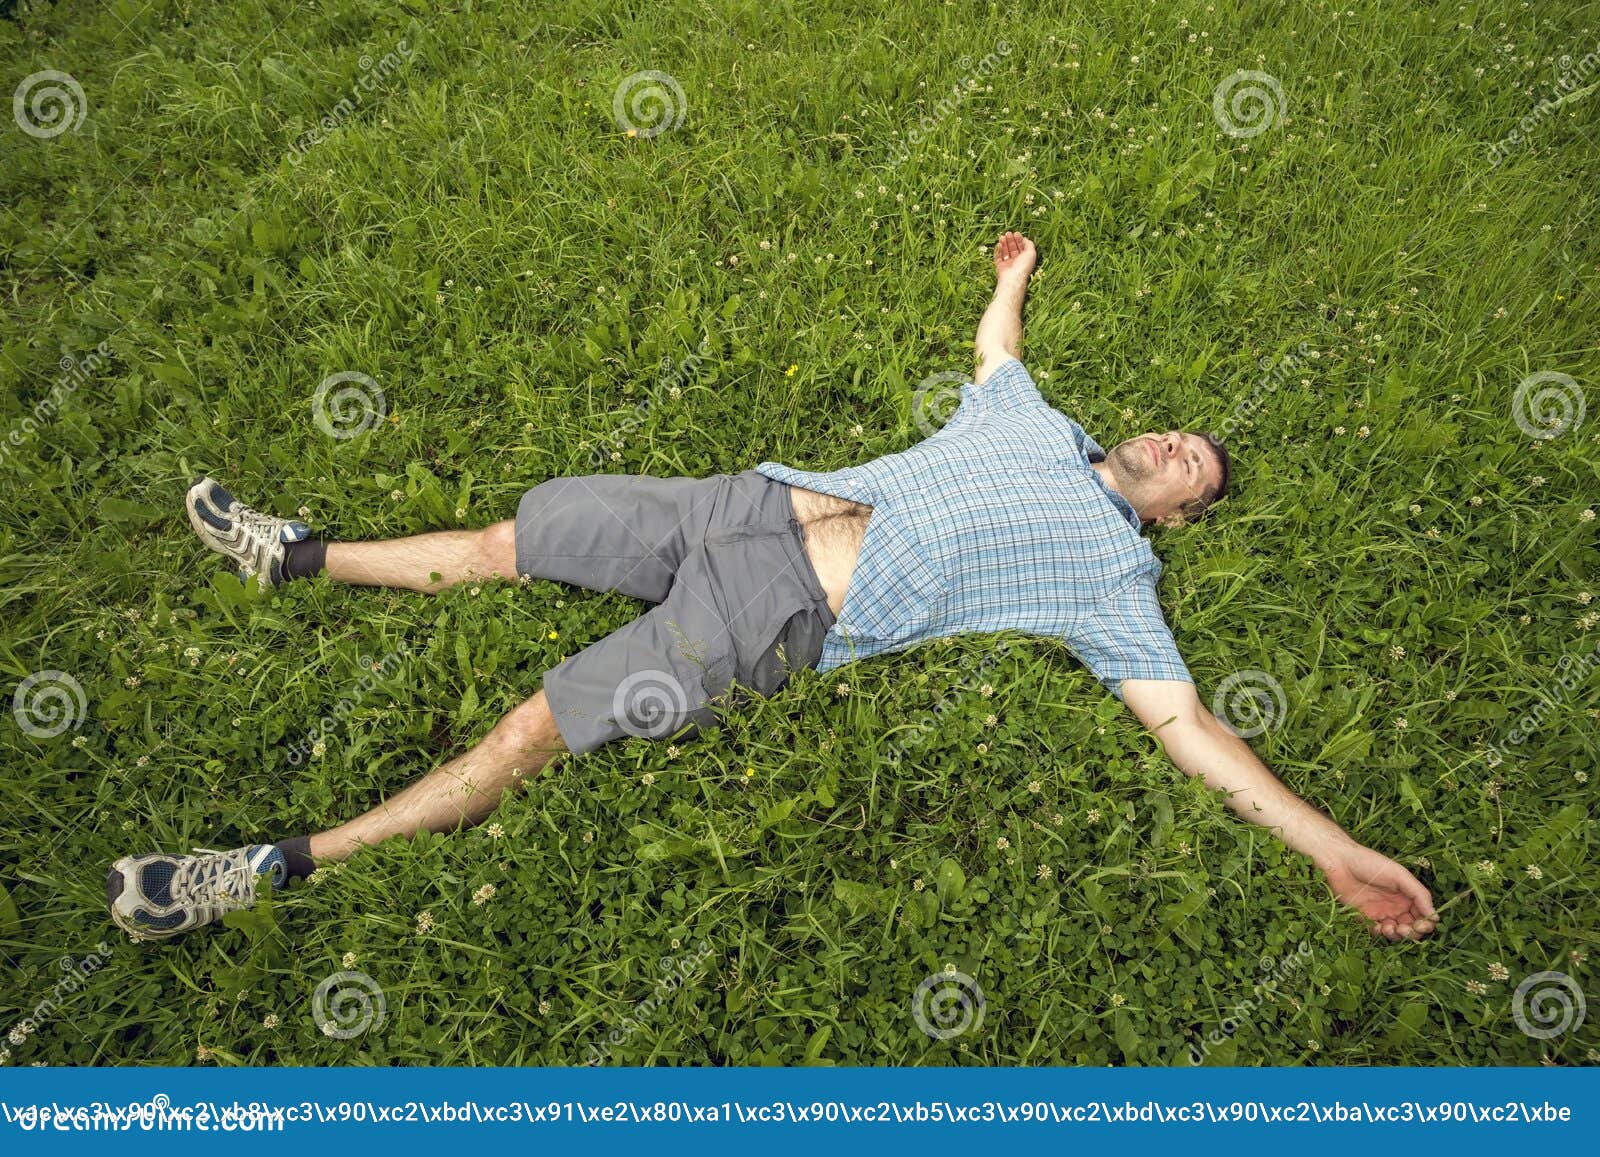 Лежит над человеком. Человек лежит на траве. Мужик лежит на траве.